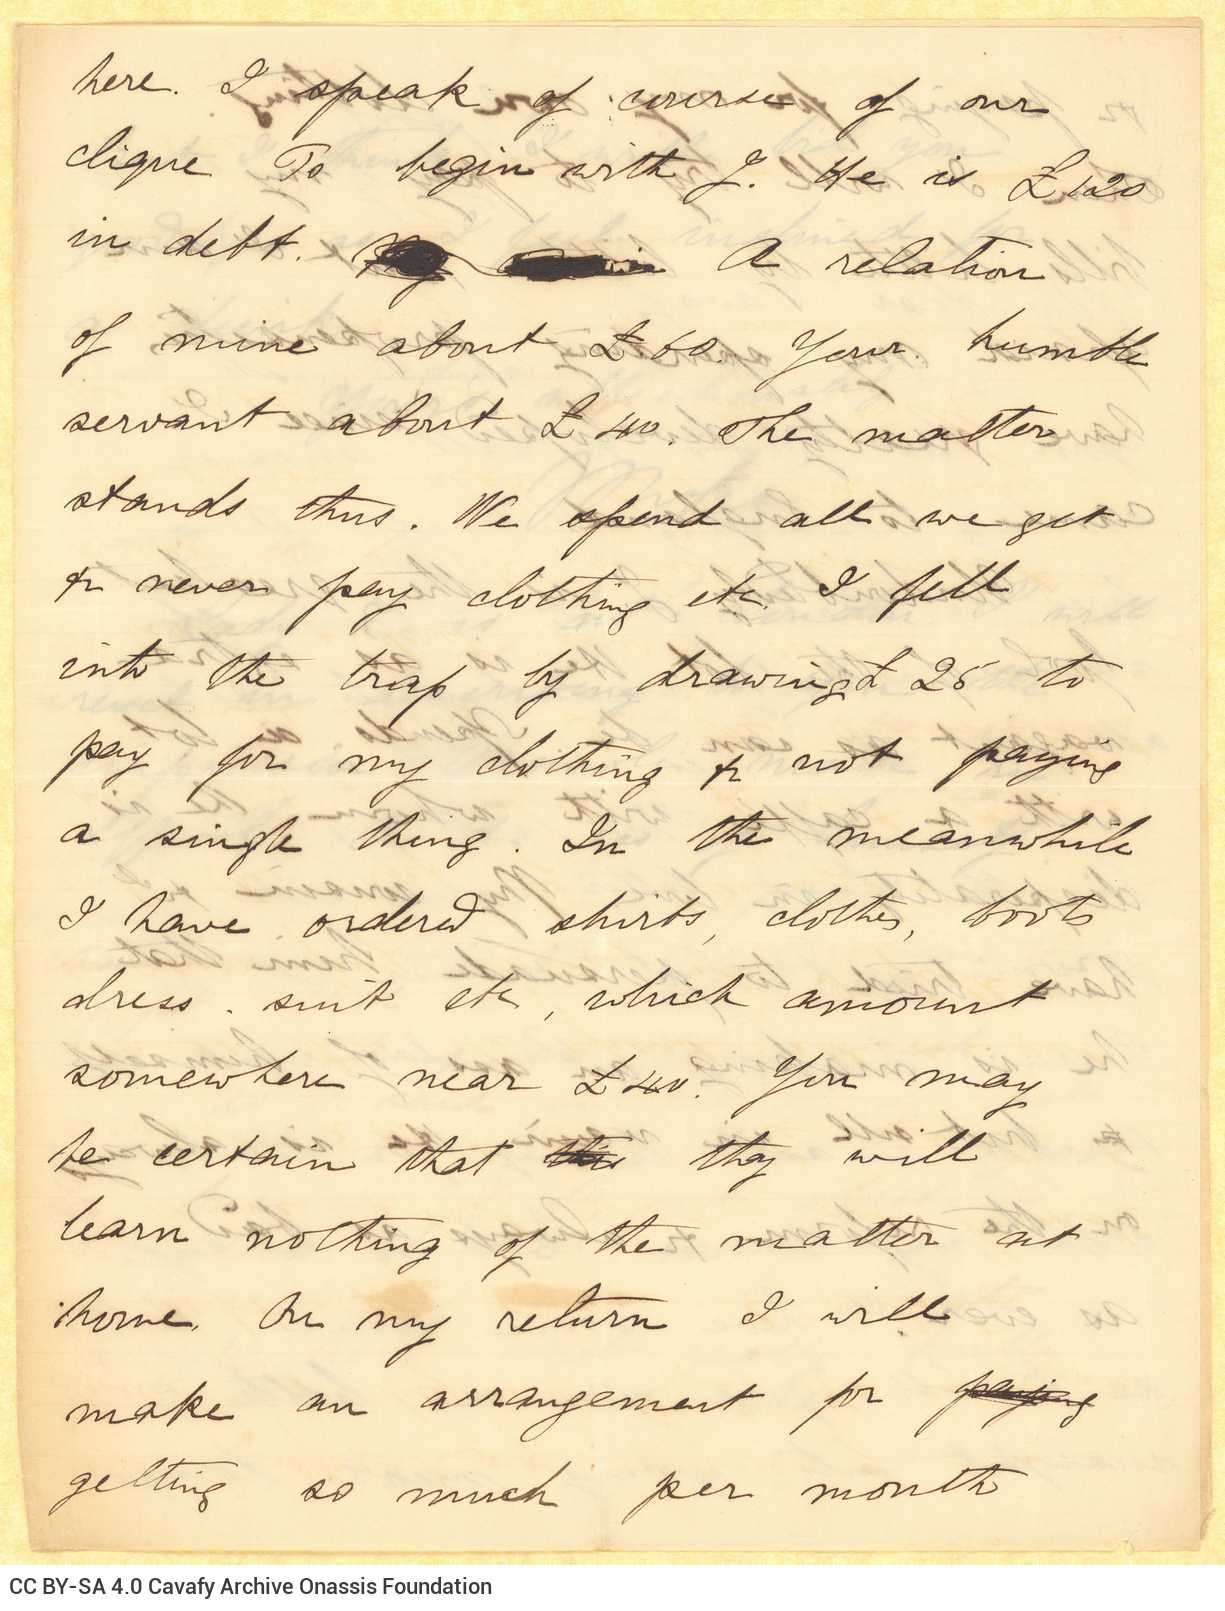 Χειρόγραφη επιστολή του Μικέ Ράλλη προς τον Καβάφη, σε δύο διακριτά �